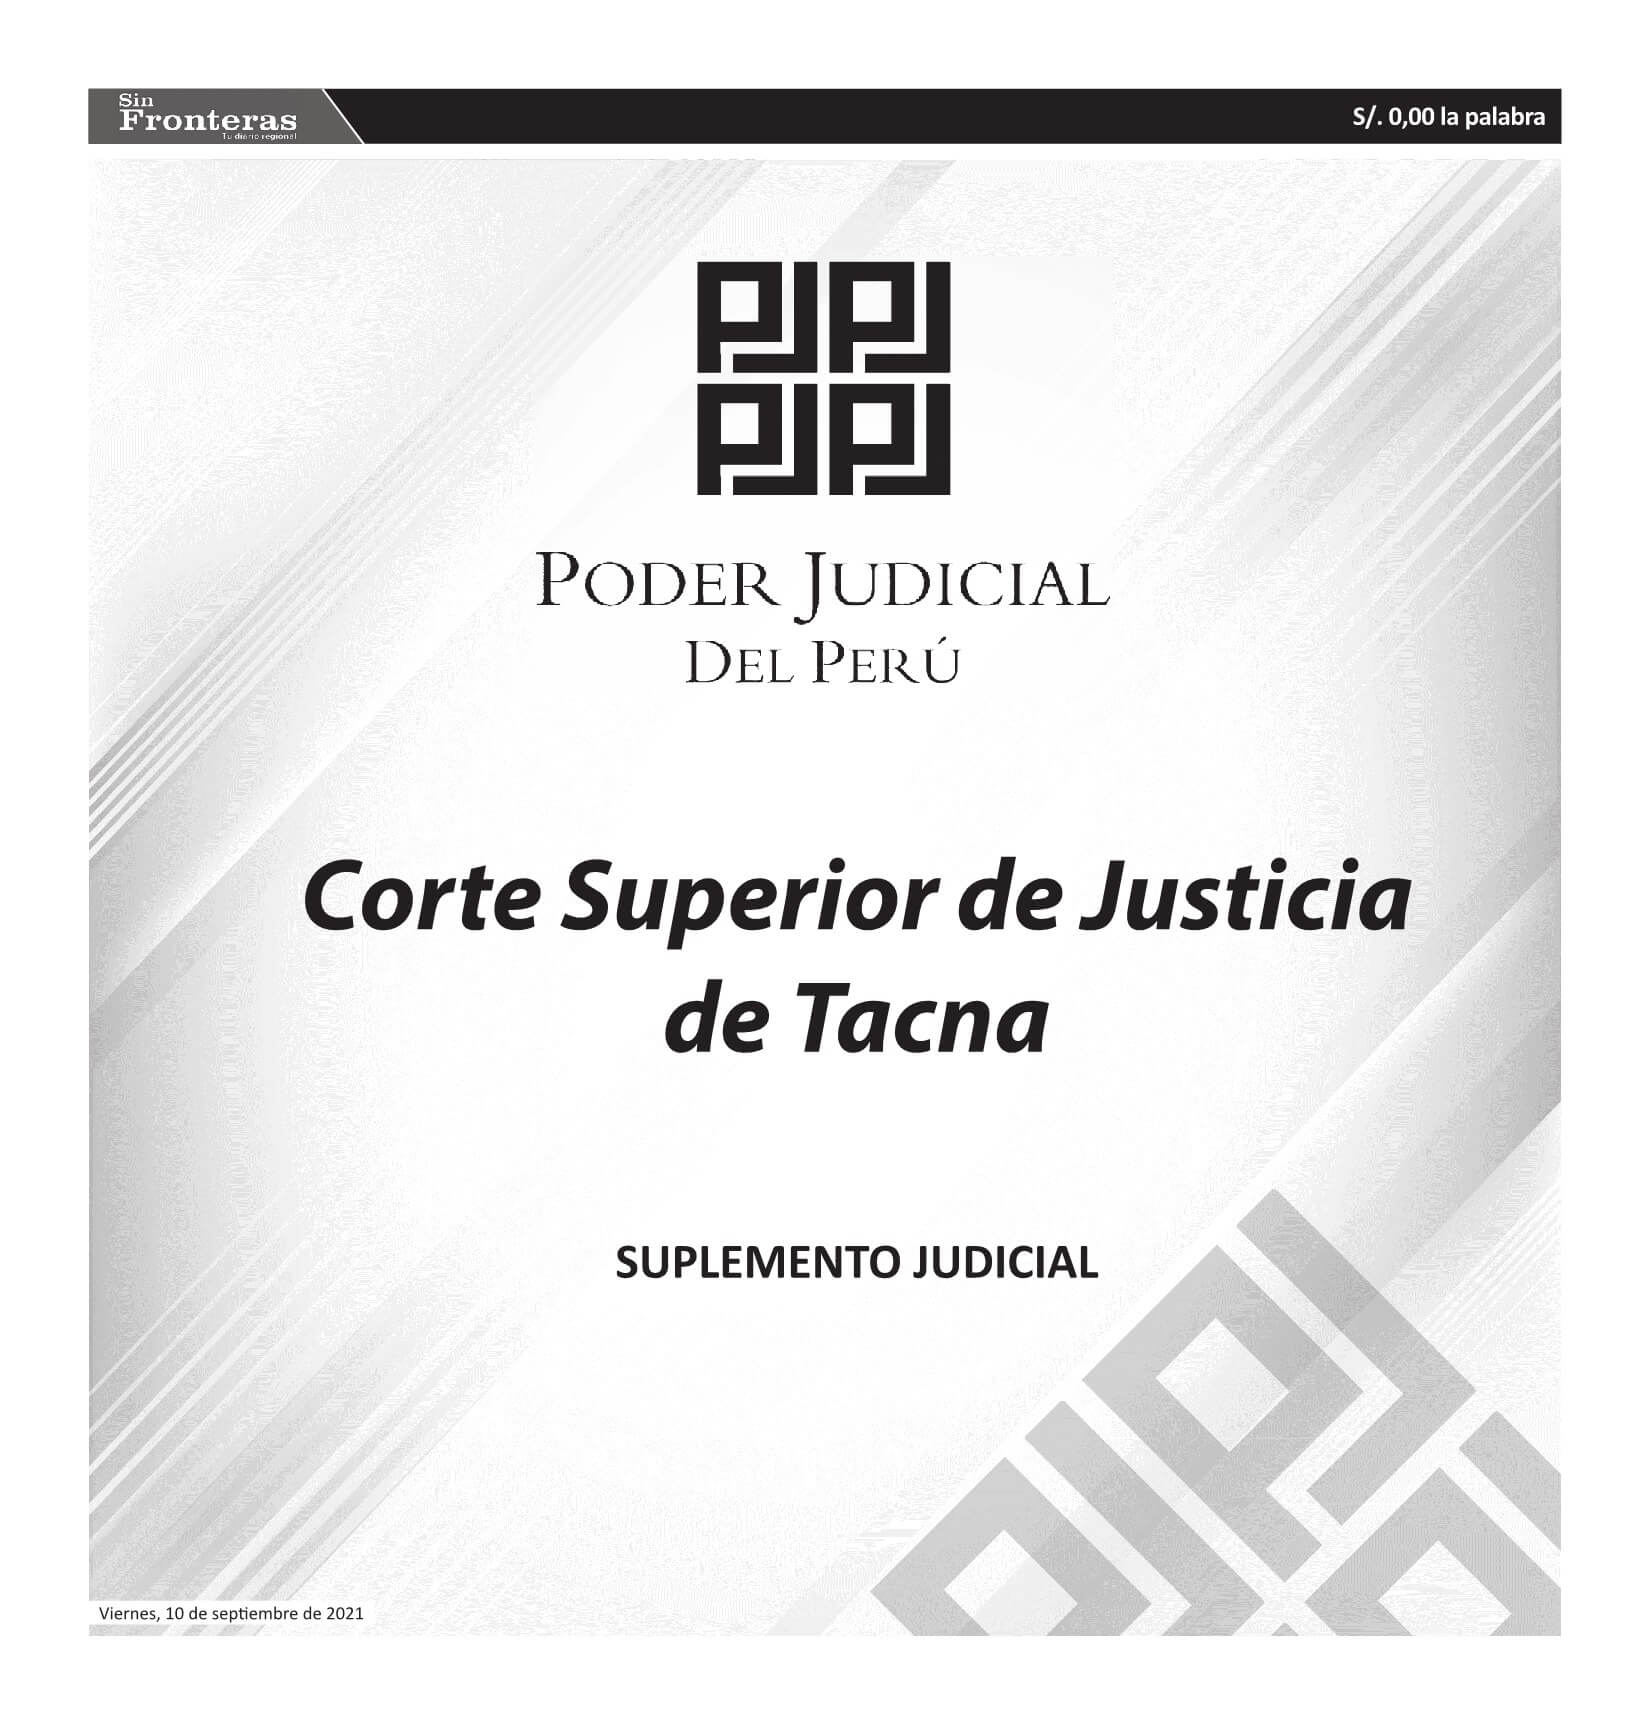  JUDICIALES TACNA 10092021